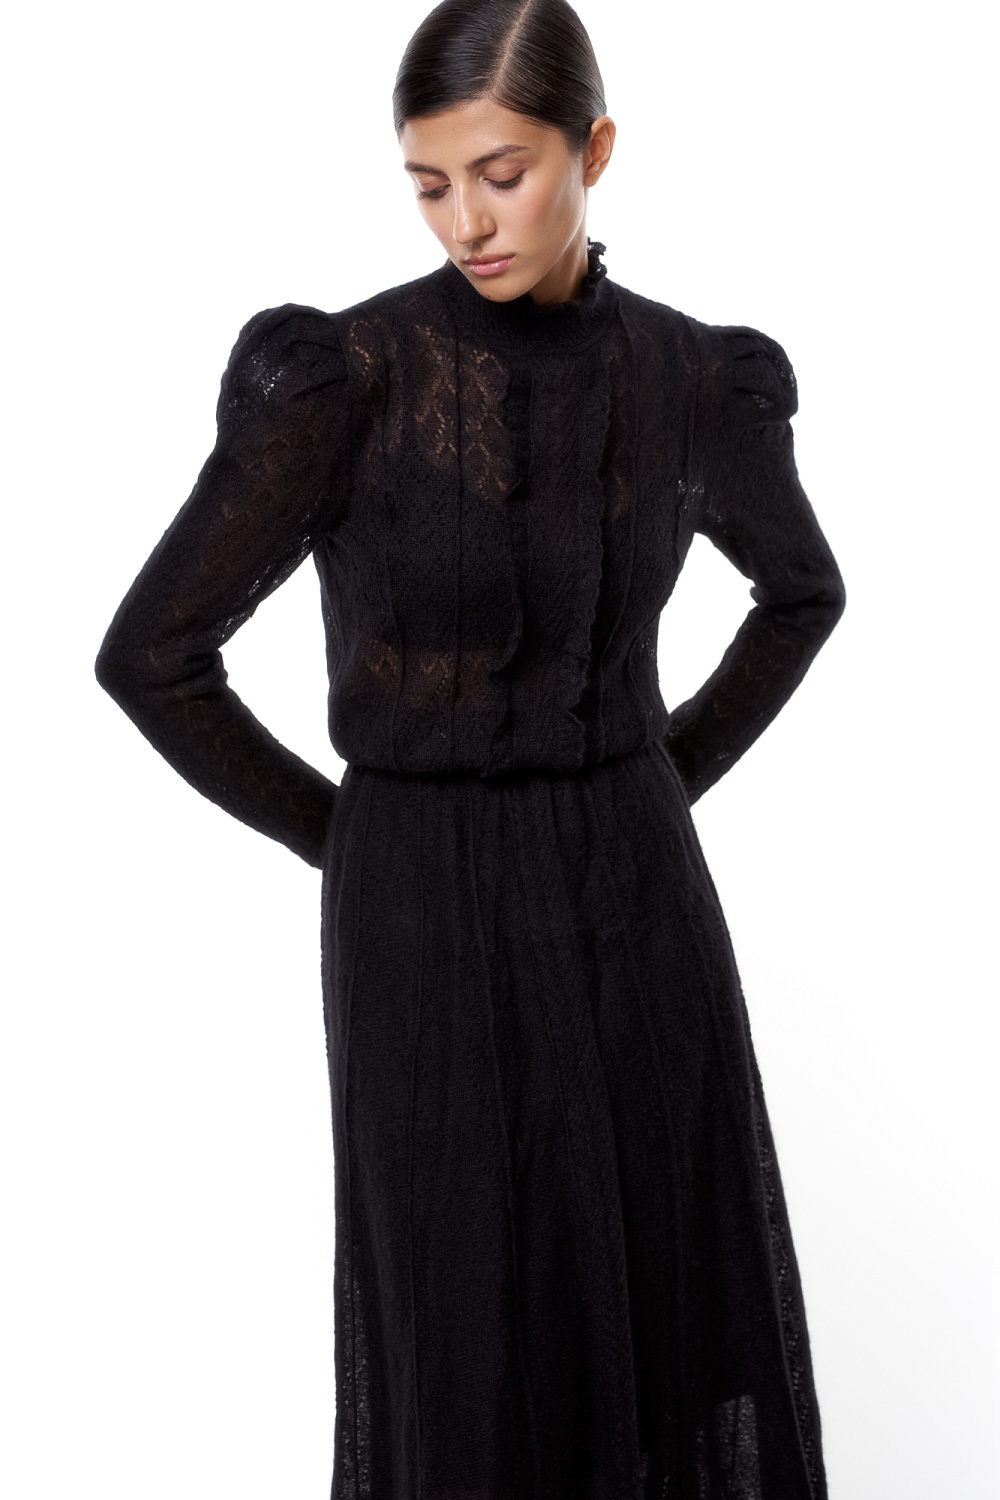 Черное ажурное платье с бежеаой подкладкой длинны-миди. Купить в Киеве • Интернет-магазин Onlady